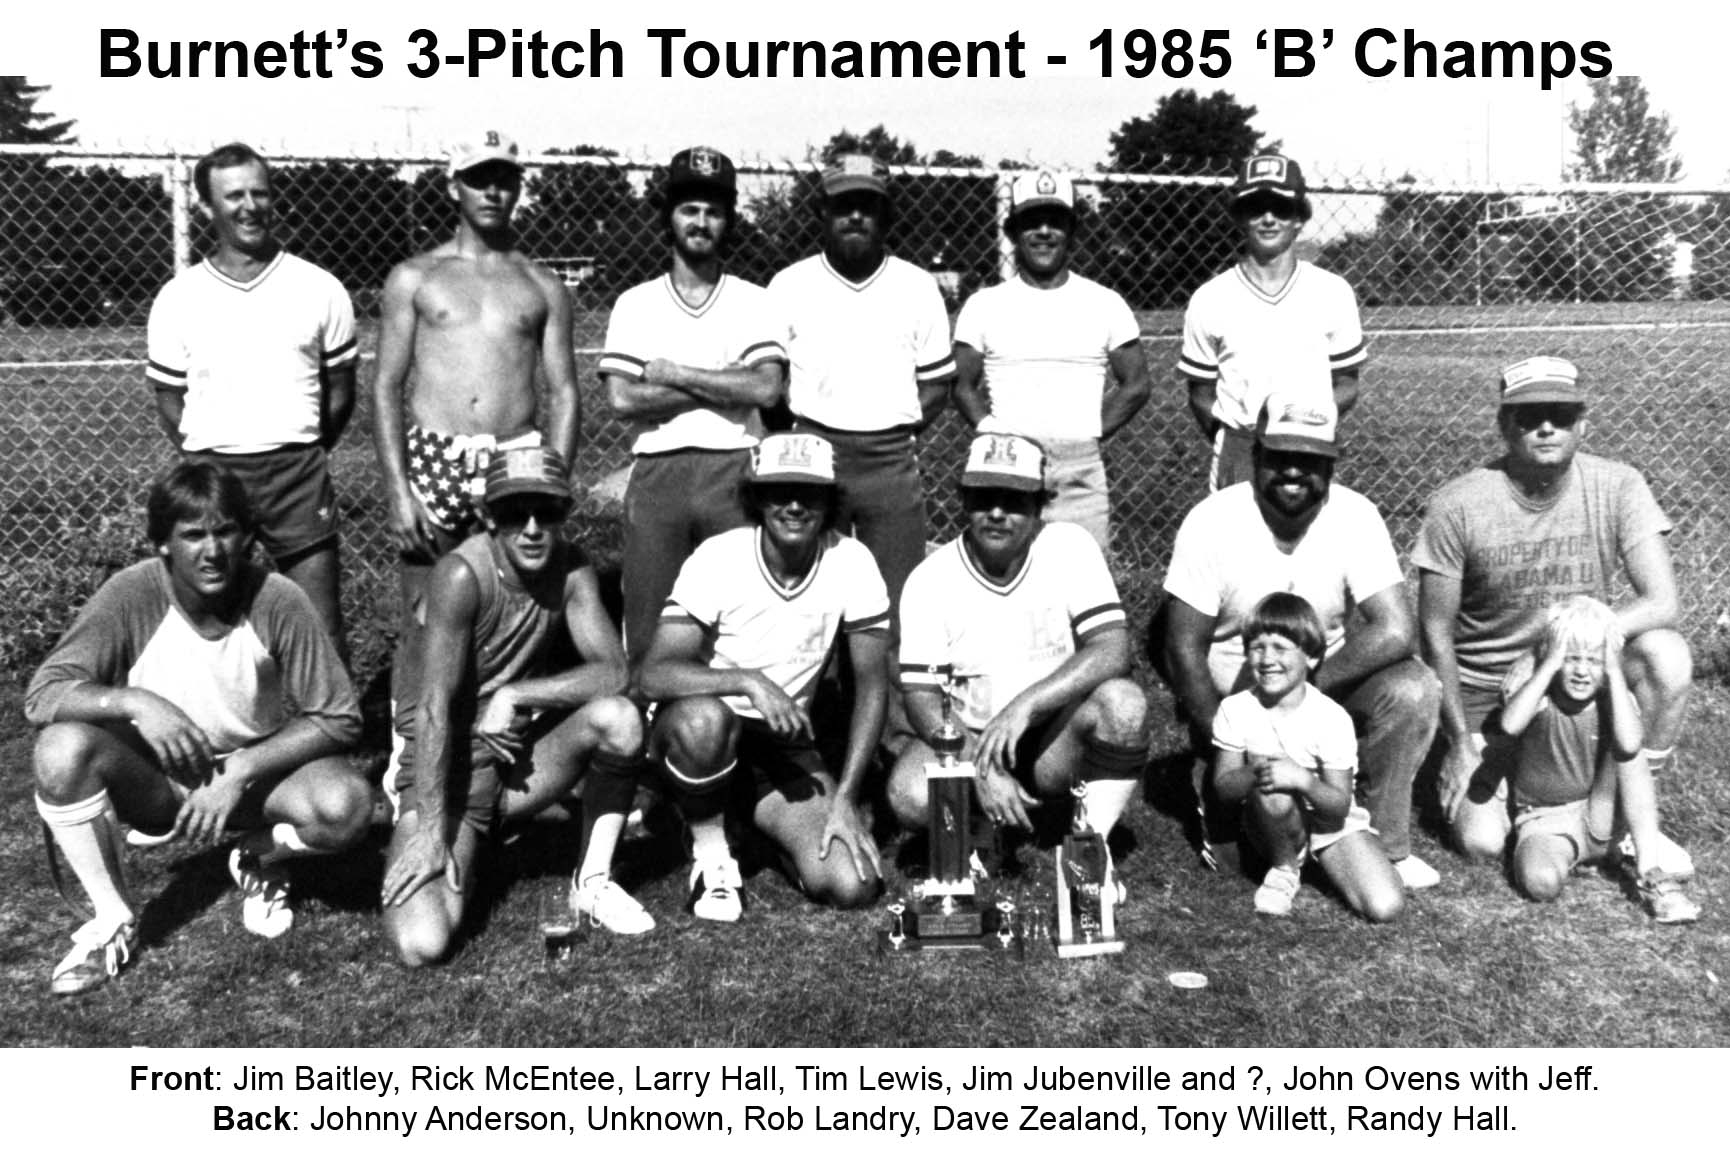 05JJ-1985 Burnett's 3-Pitch Tournament -B Champs